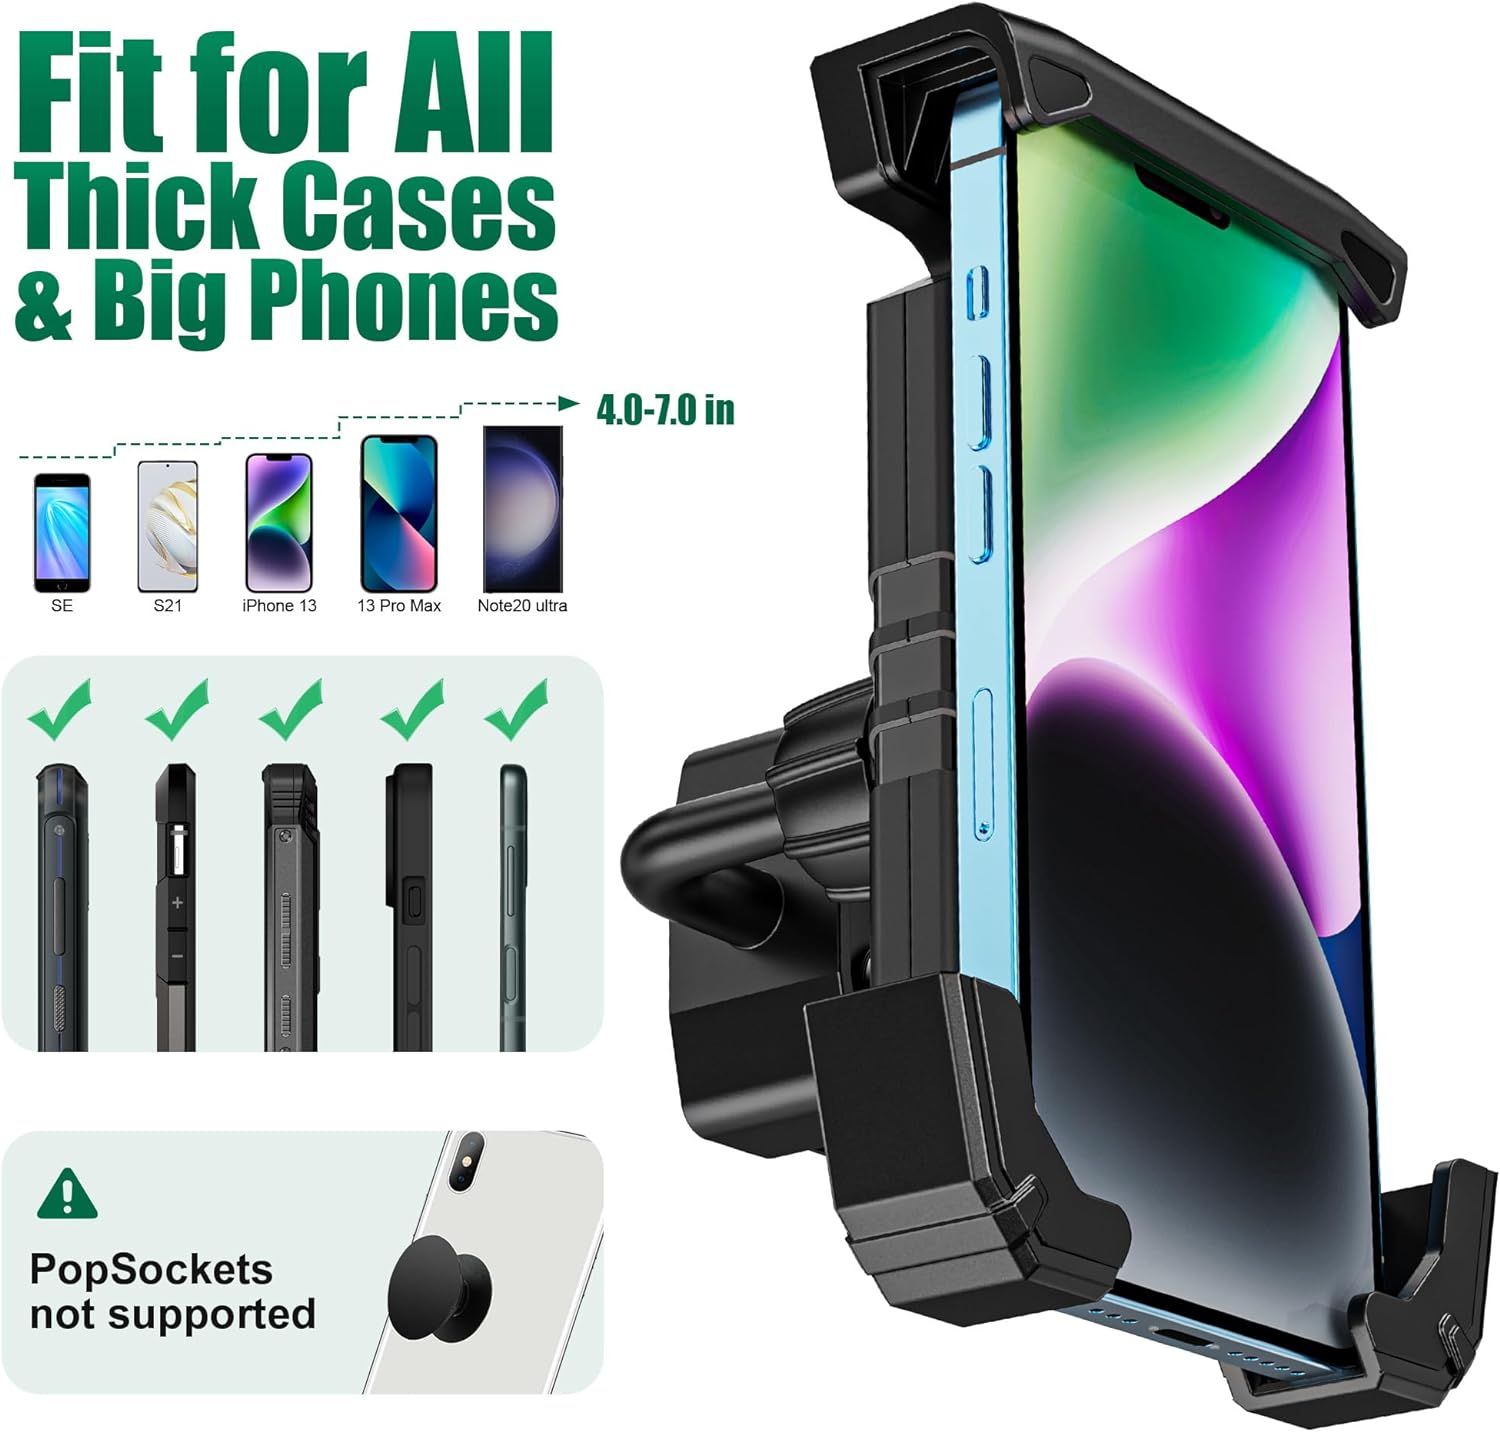 Golf Cart Phone Holder-360° Adjustable - 10L0L